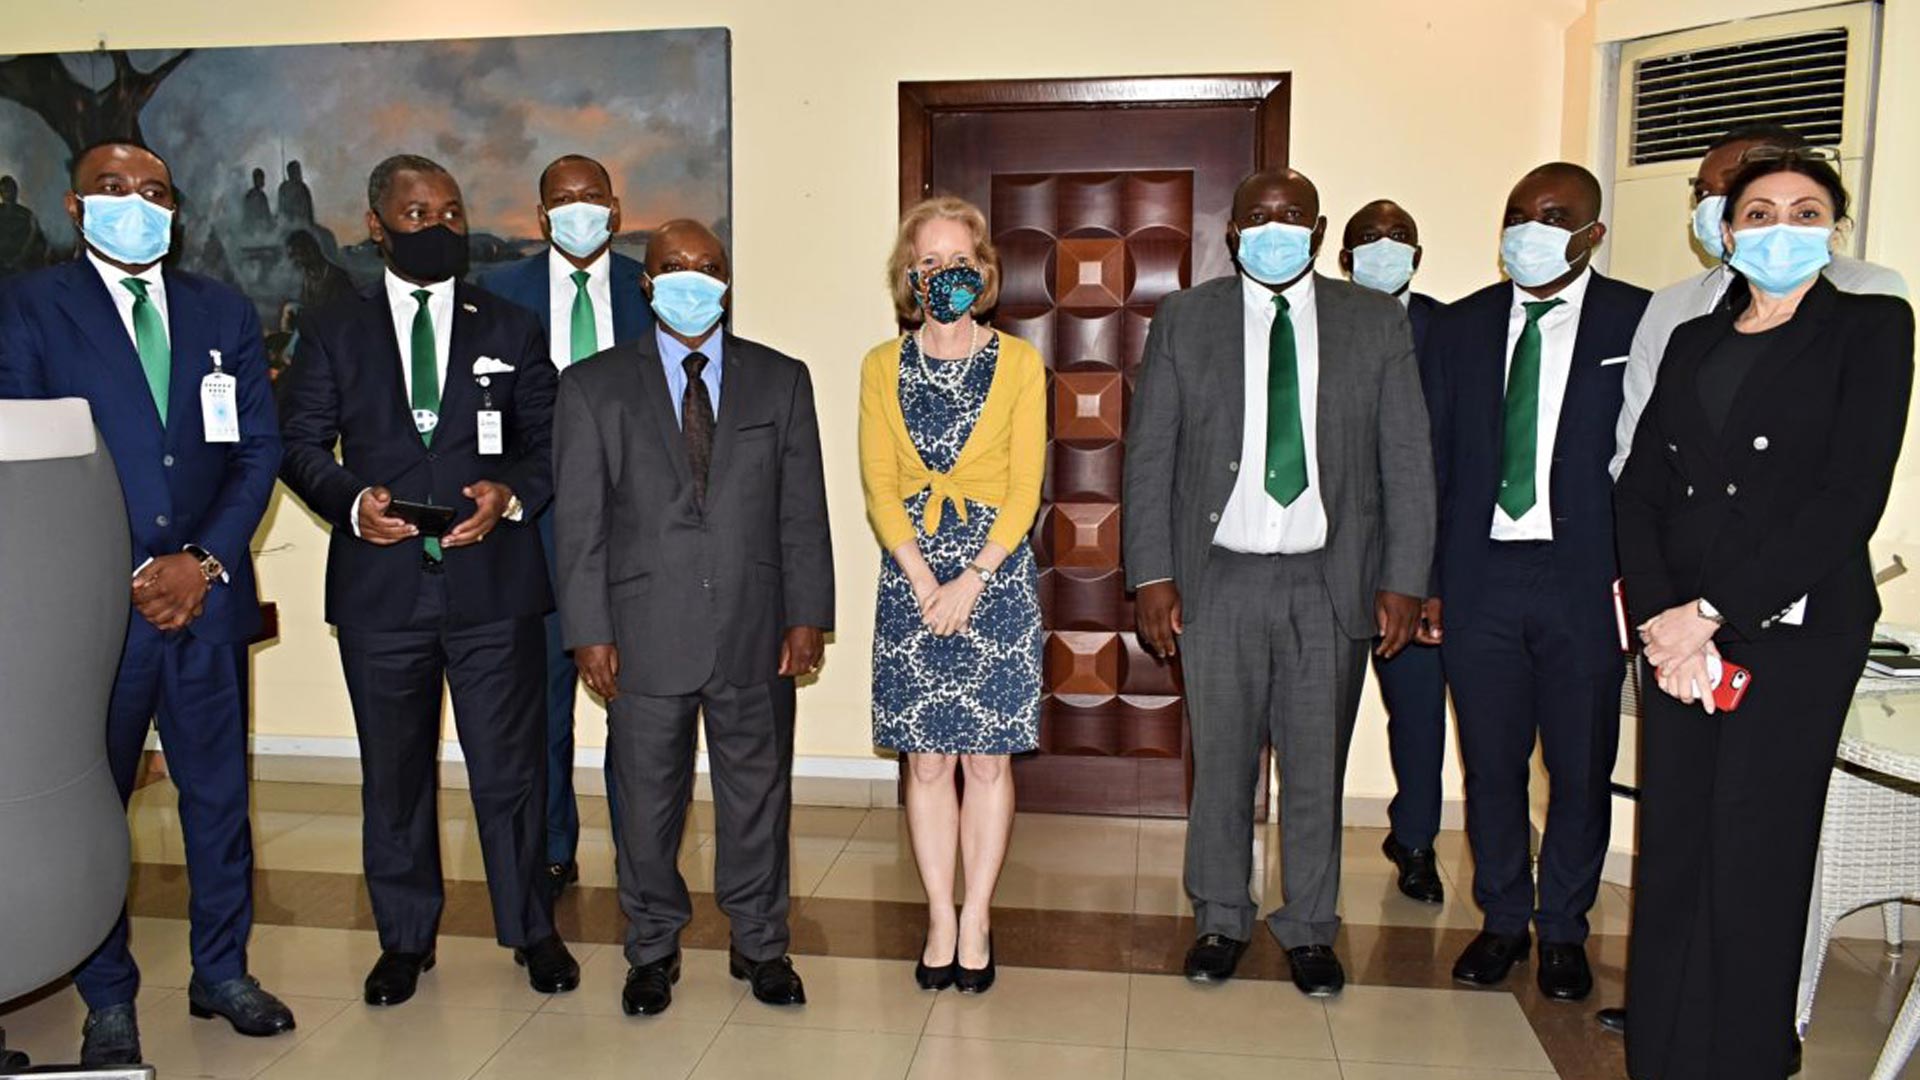 “BANGE está influyendo mucho en el desarrollo de Guinea Ecuatorial”: Susan Stevenson, Embajadora de EEUU en Guinea Ecuatorial